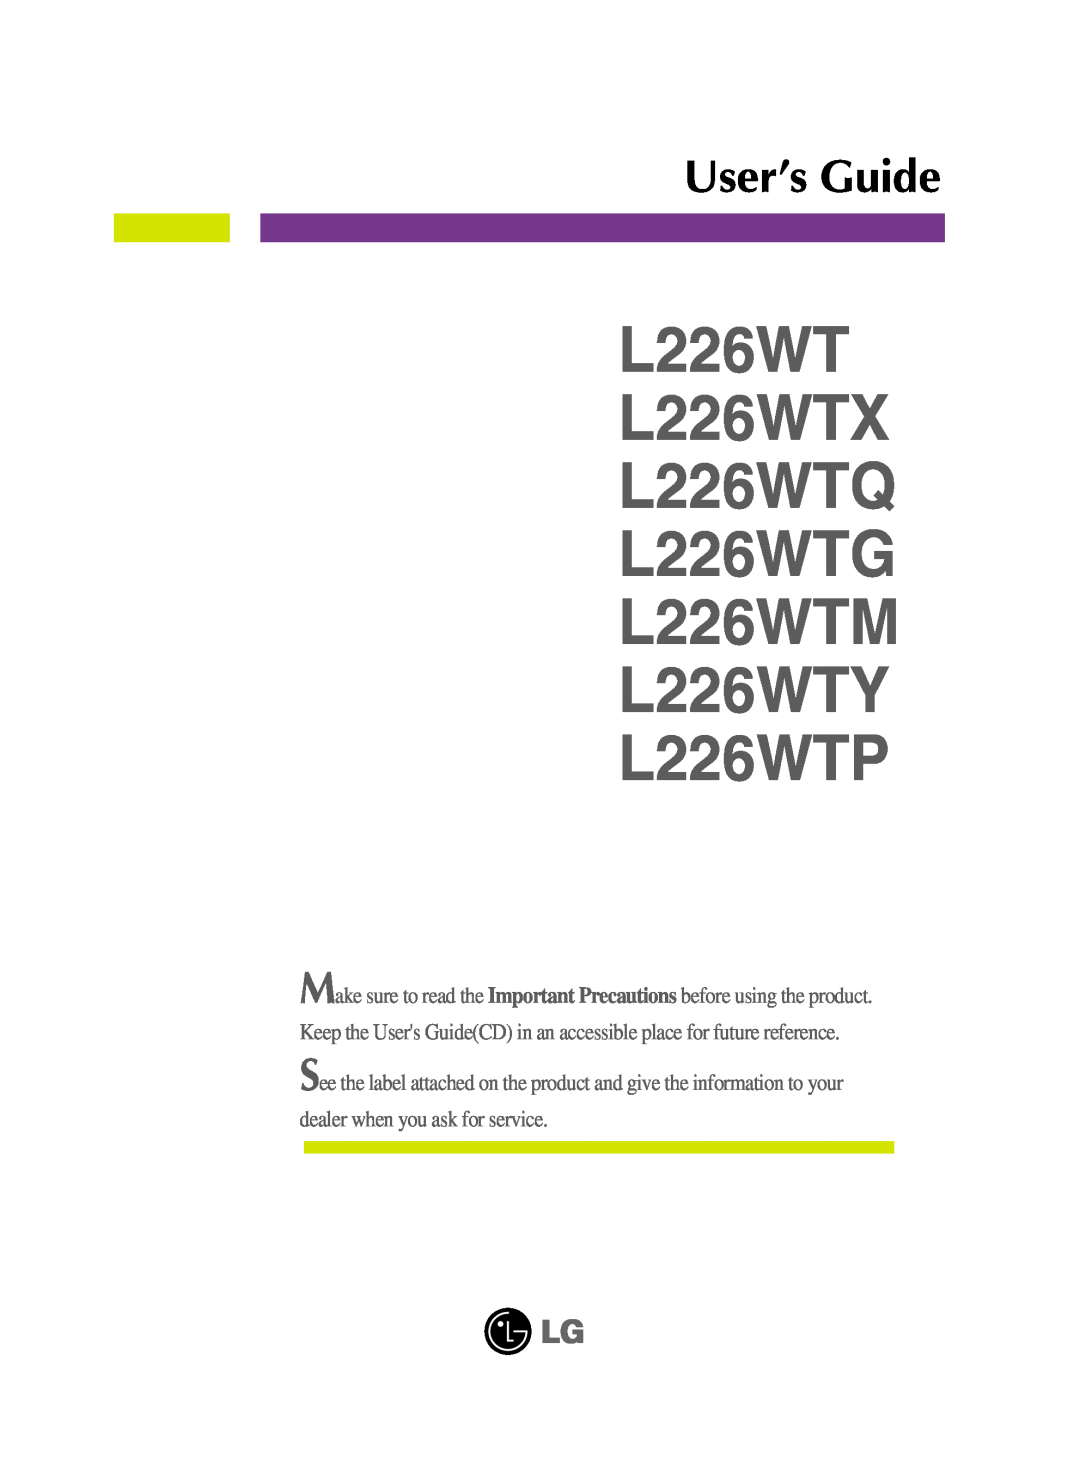 LG Electronics manual L226WT L226WTX L226WTQ L226WTG L226WTM L226WTY L226WTP, User’s Guide 